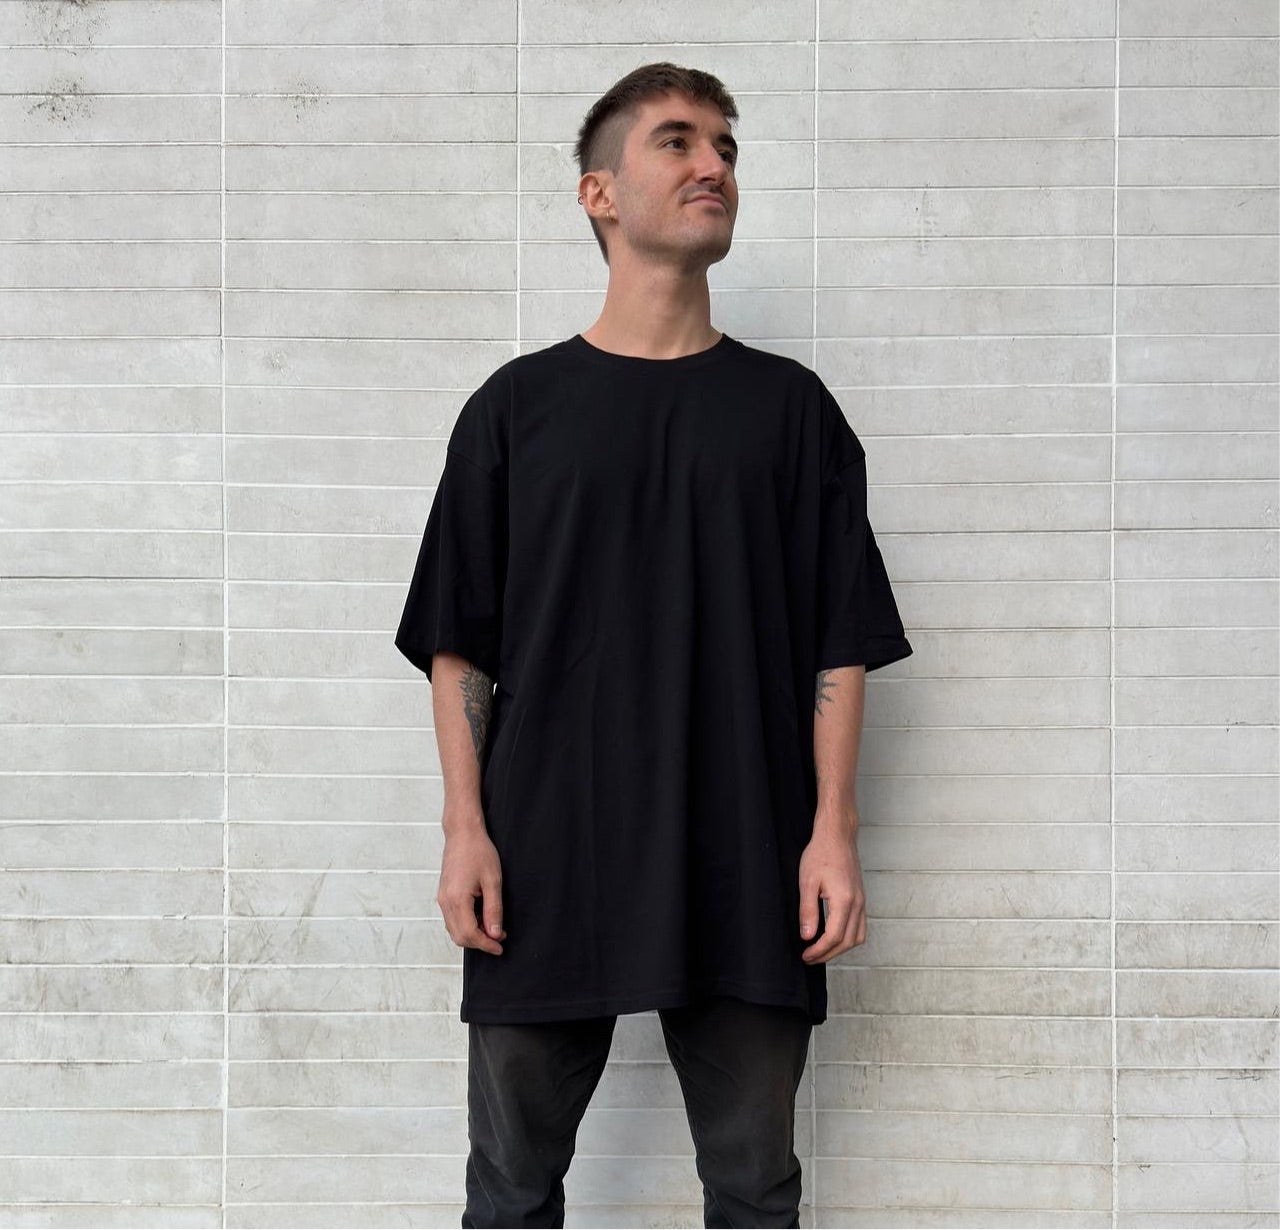 Luxury streetwear model wearing black t-shirt oversized drop shoulder tee against urban wall 